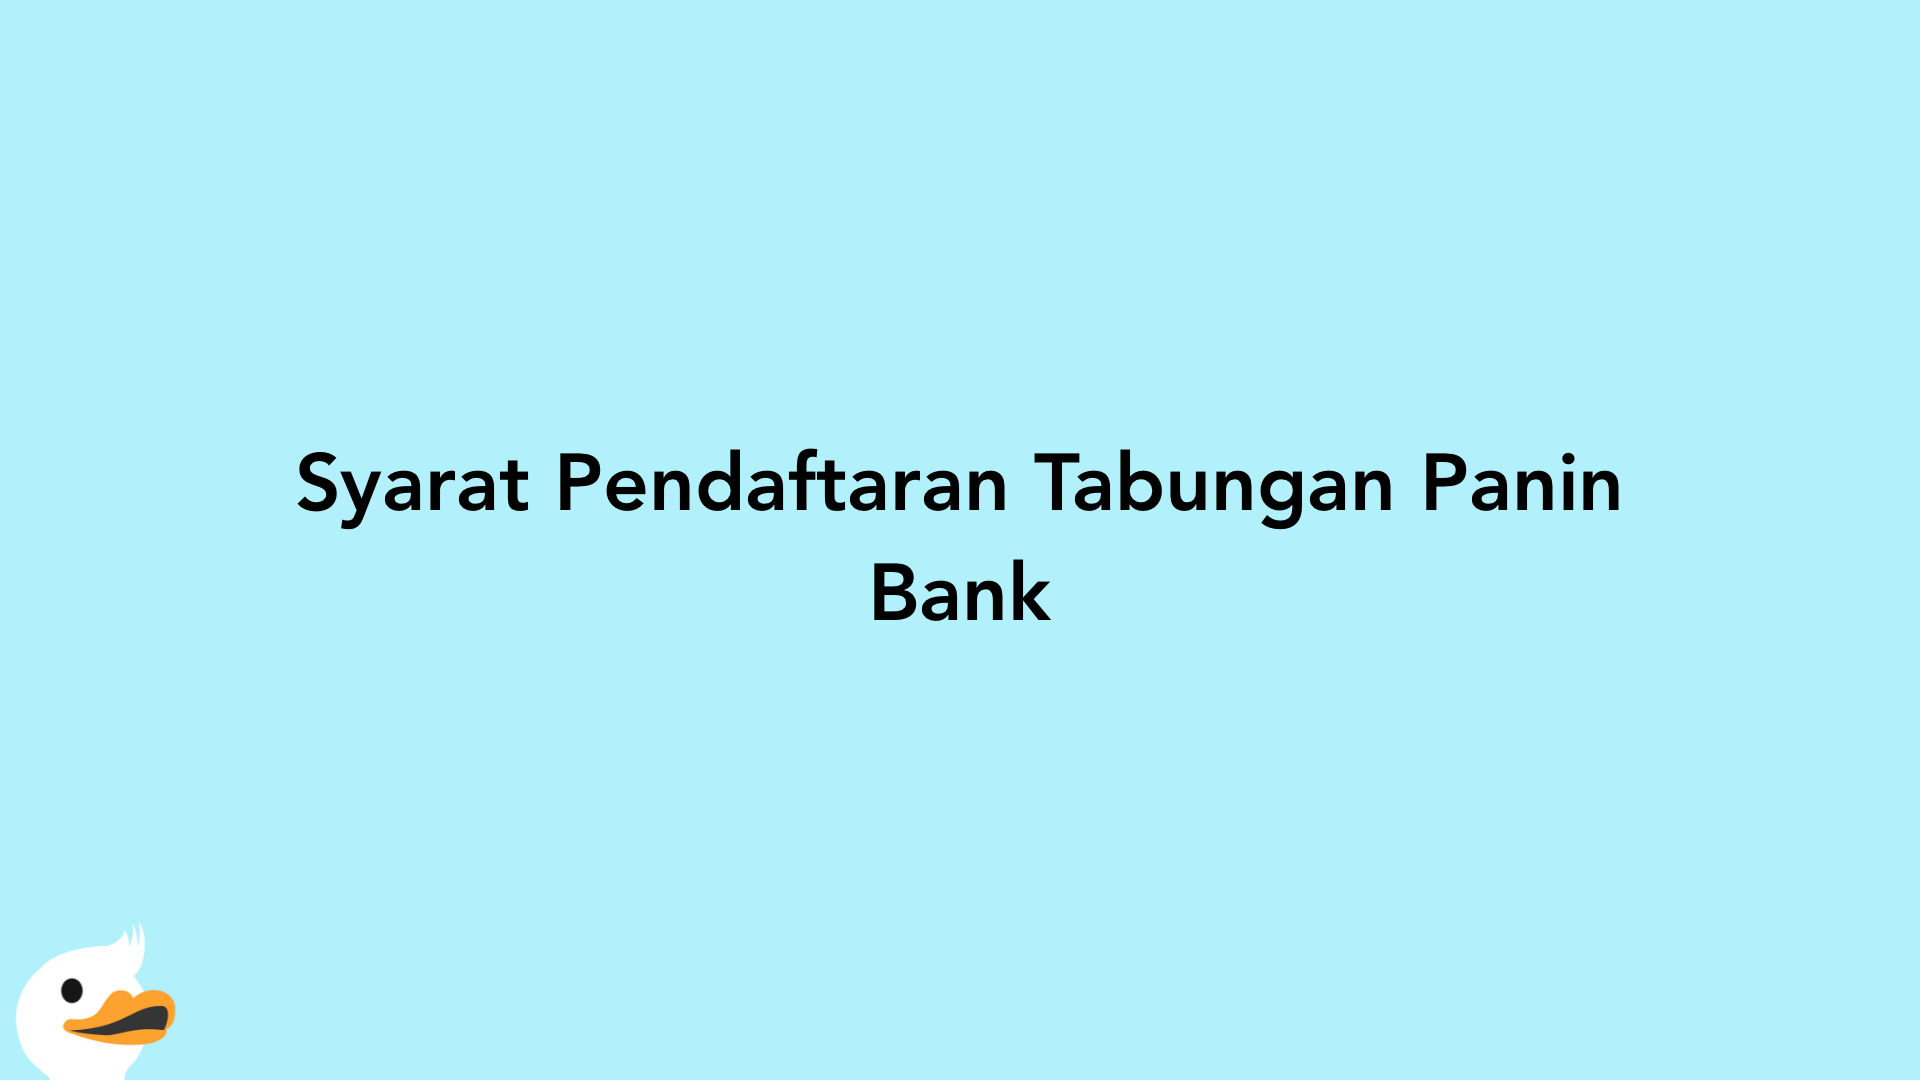 Syarat Pendaftaran Tabungan Panin Bank